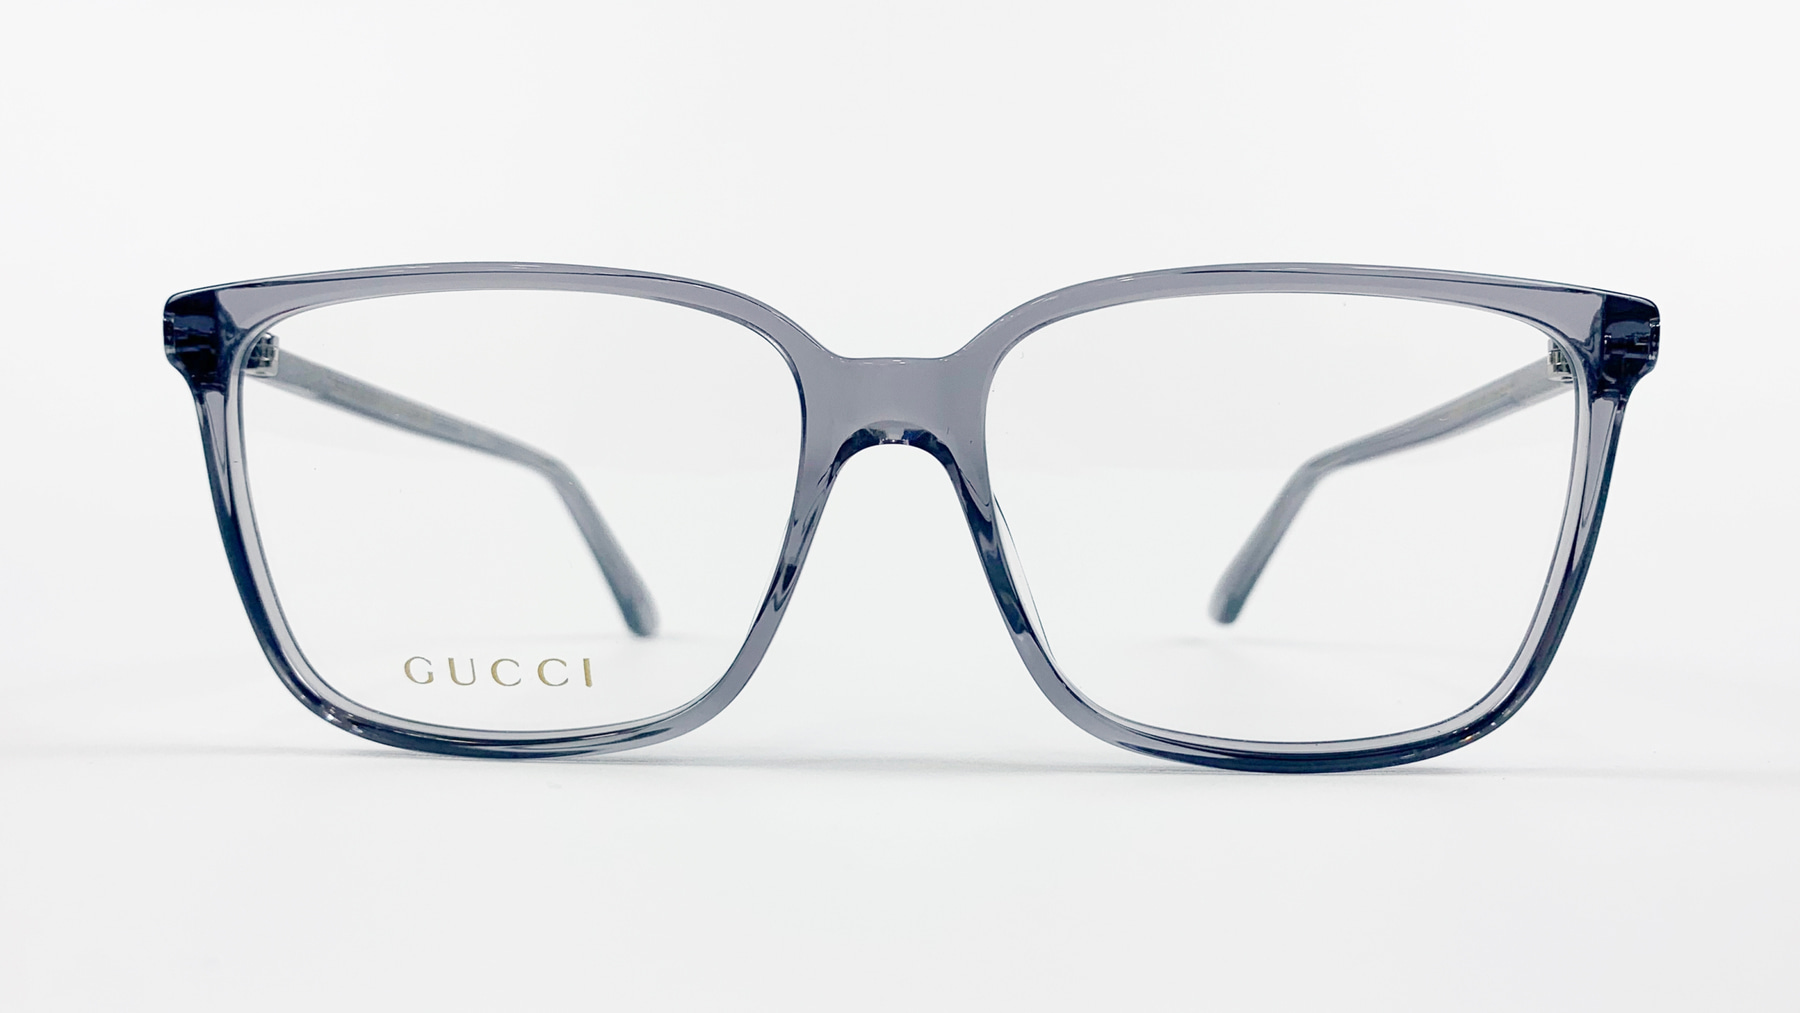 GUCCI GG0019O, Korean glasses, sunglasses, eyeglasses, glasses